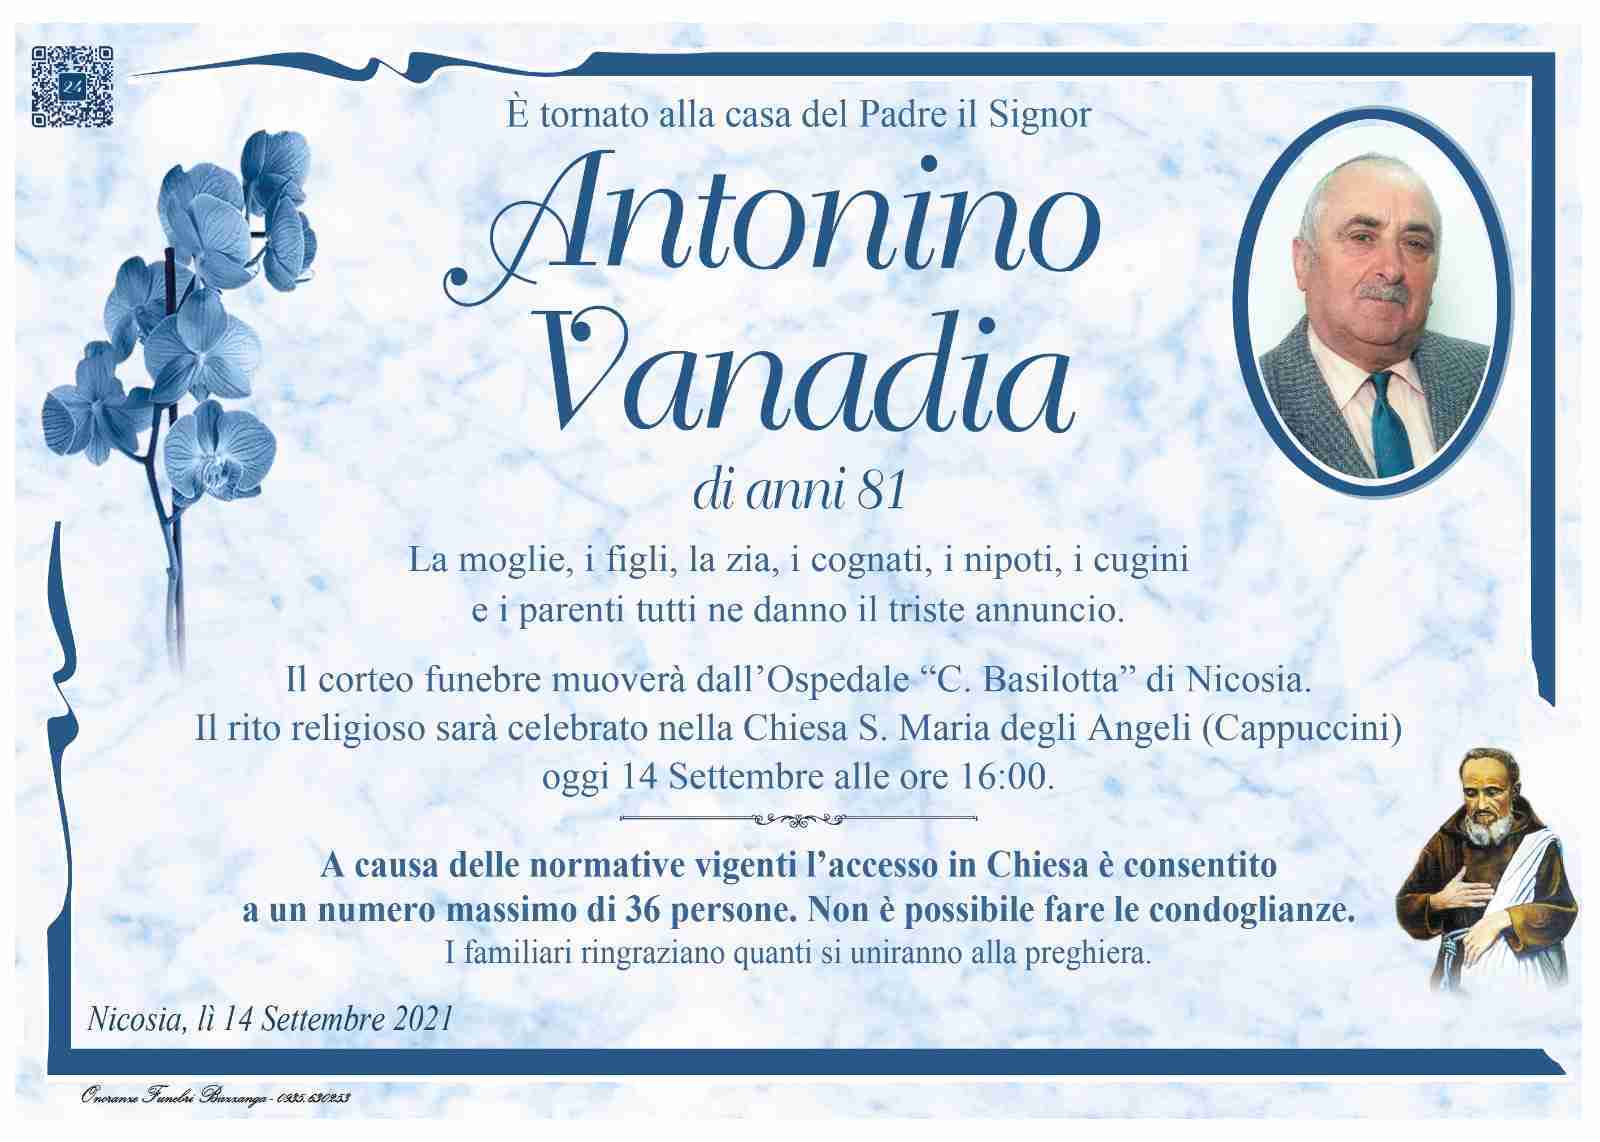 Antonino Vanadia